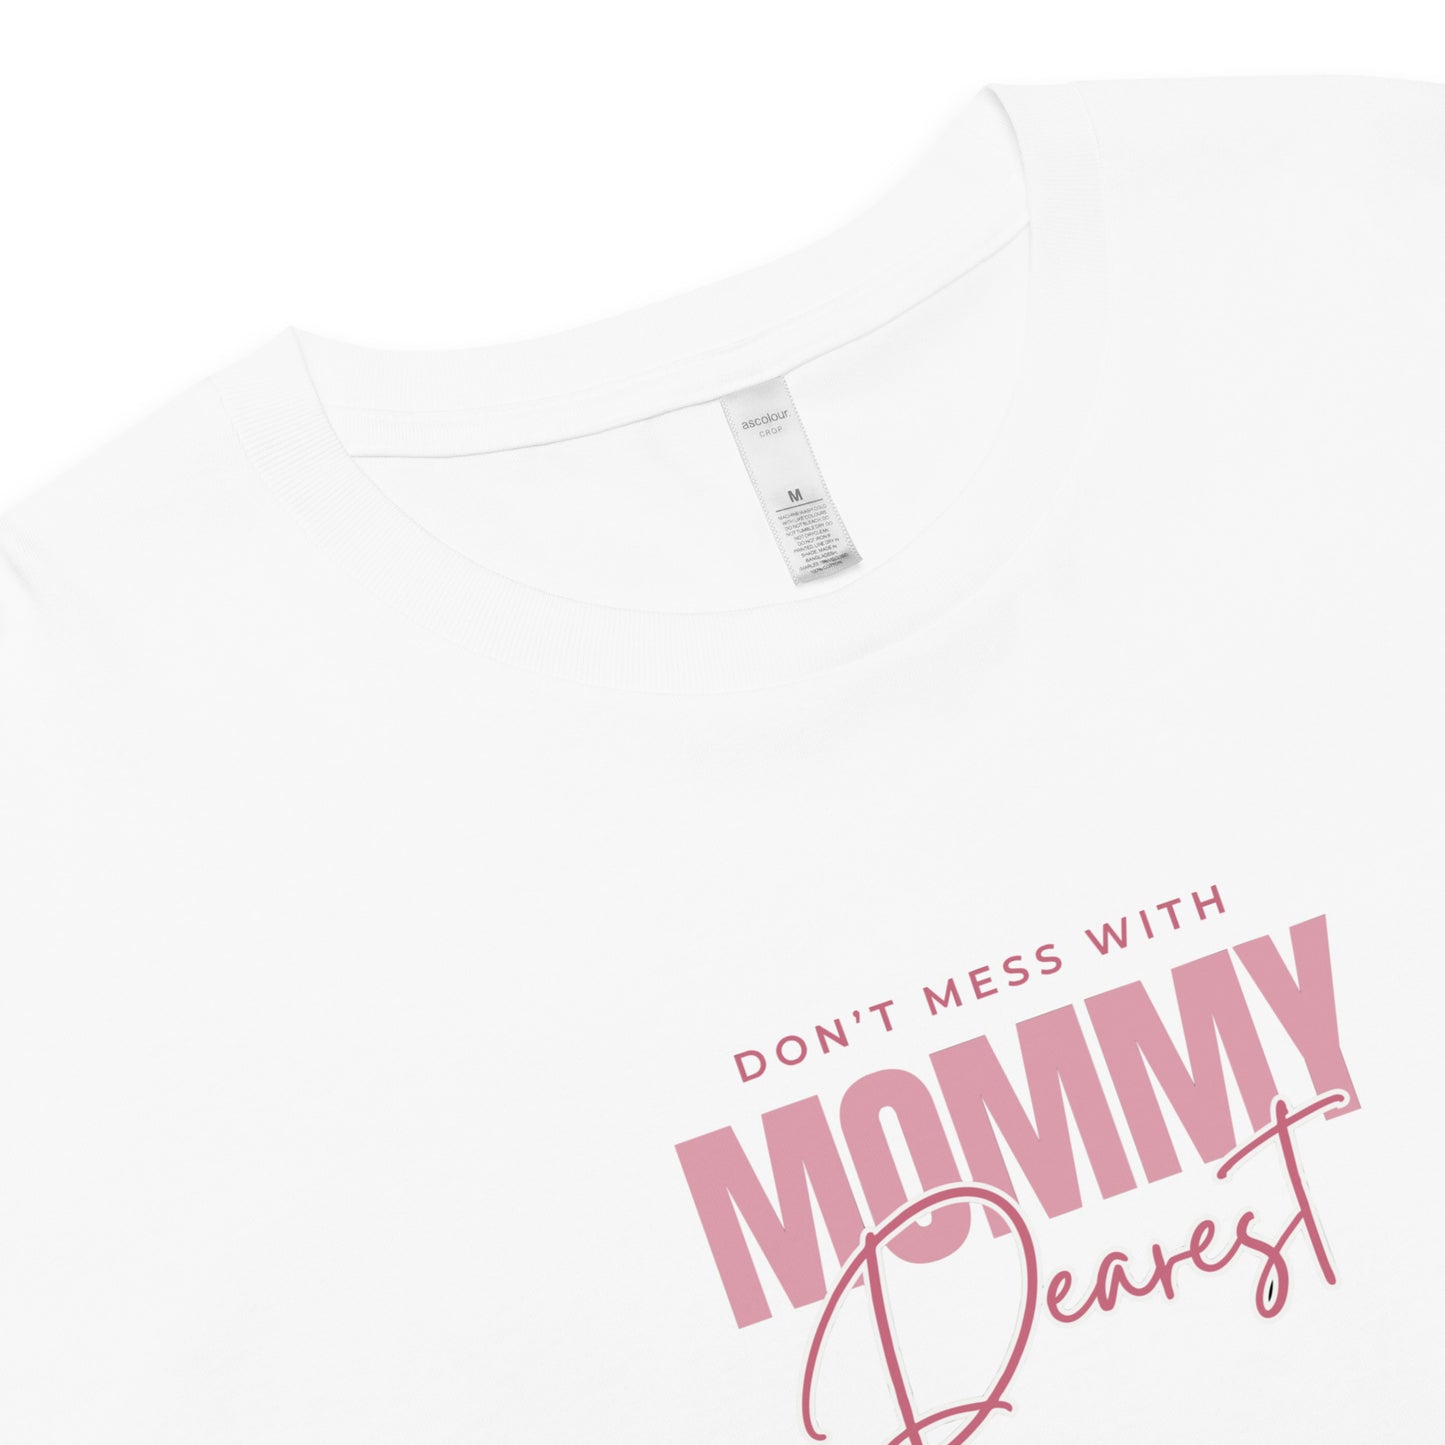 Mommy Dearest | Women’s Crop Top | Relaxed Fit